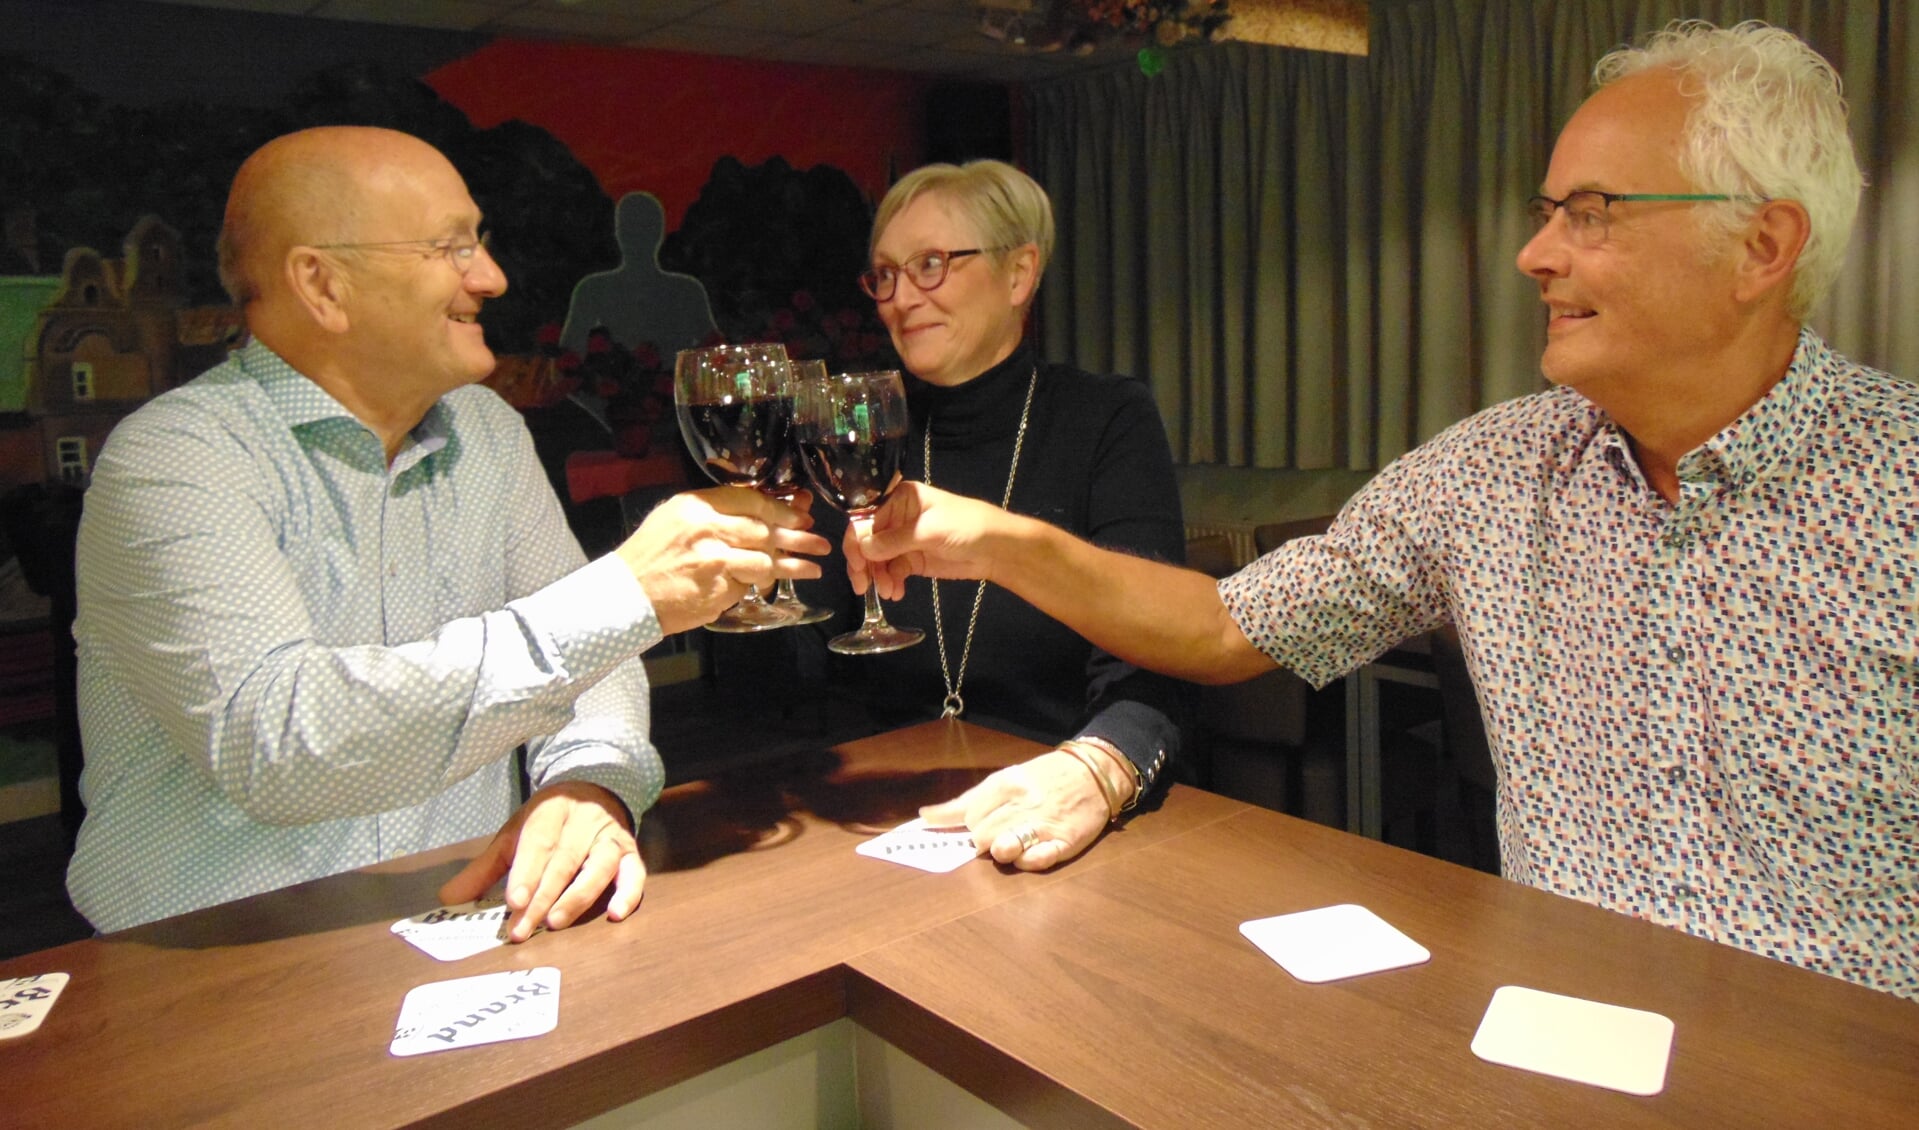 Joep, Ineke en Wim (v.l.n.r.) proosten alvast op het jubileumweekend. (foto: Dorry Smeets)